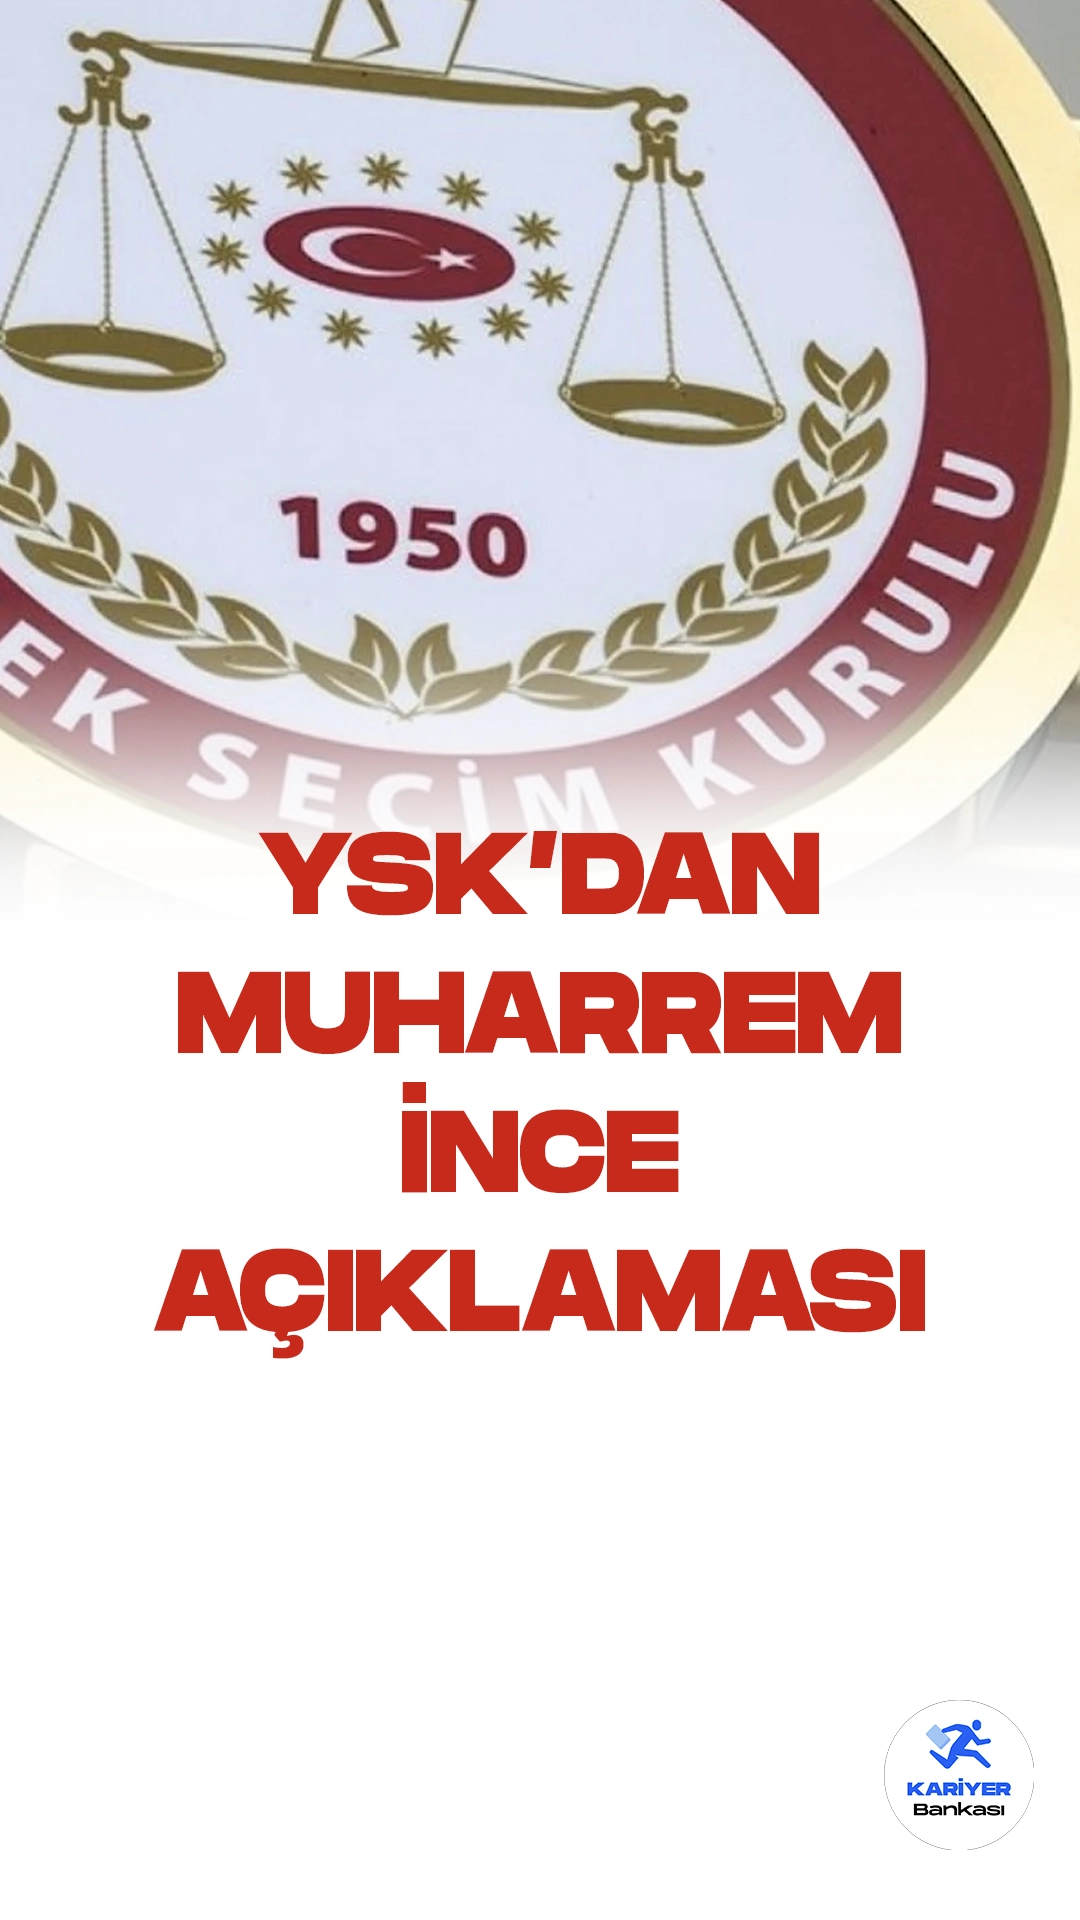 Yüksek Seçim Kurulu (YSK) Başkanı Ahmet Yener, Cumhurbaşkanlığı adaylığından çekilen Muharrem İnce ile ilgili alınan kararı açıklandı.